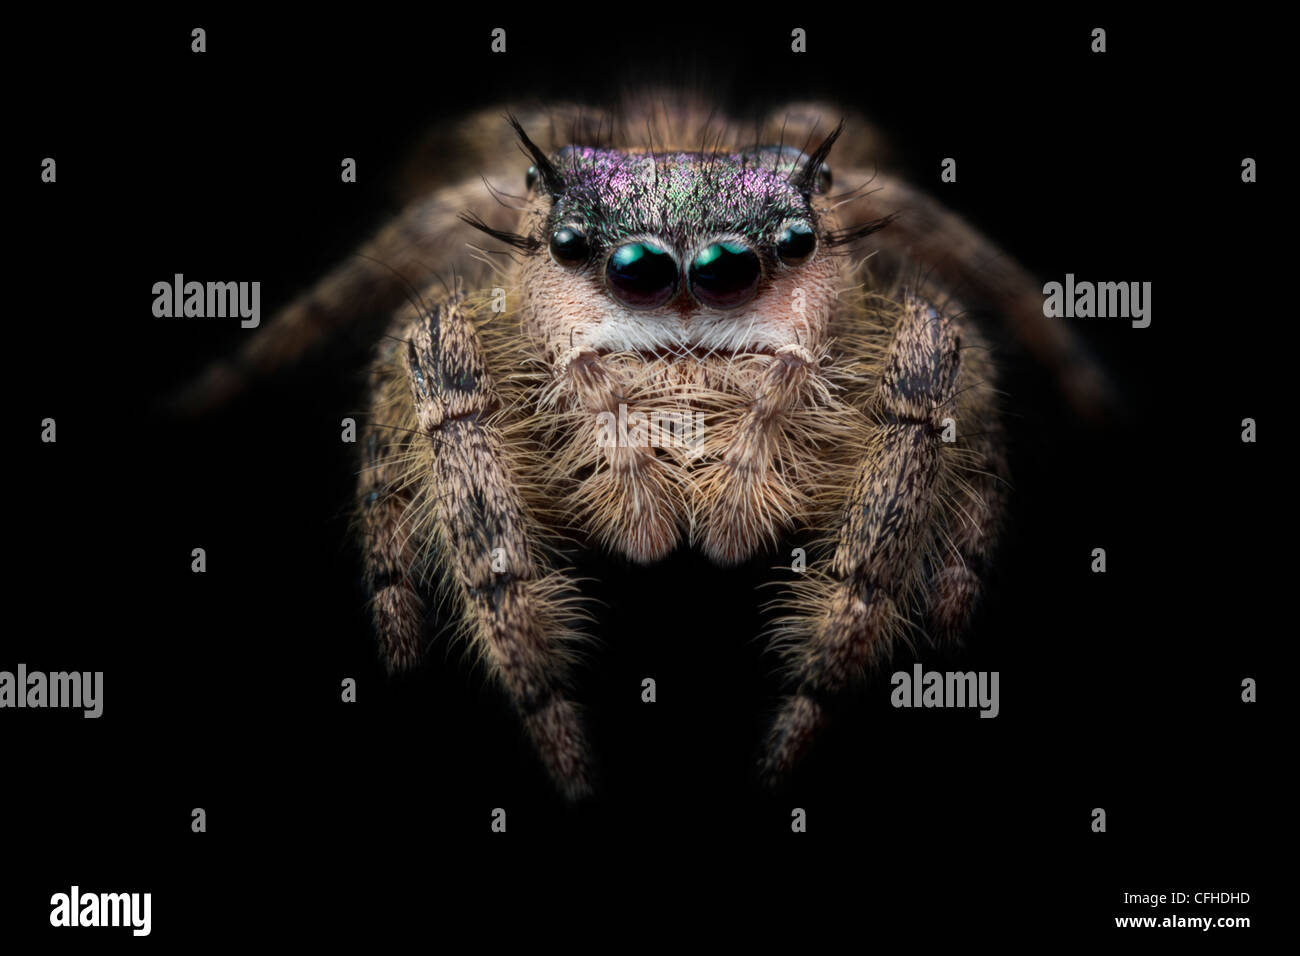 Canopy saltando Spider hembra, cautivo, originarios de América del Norte. Fotografiado en terciopelo negro. Tamaño < 1 cm. Foto de stock